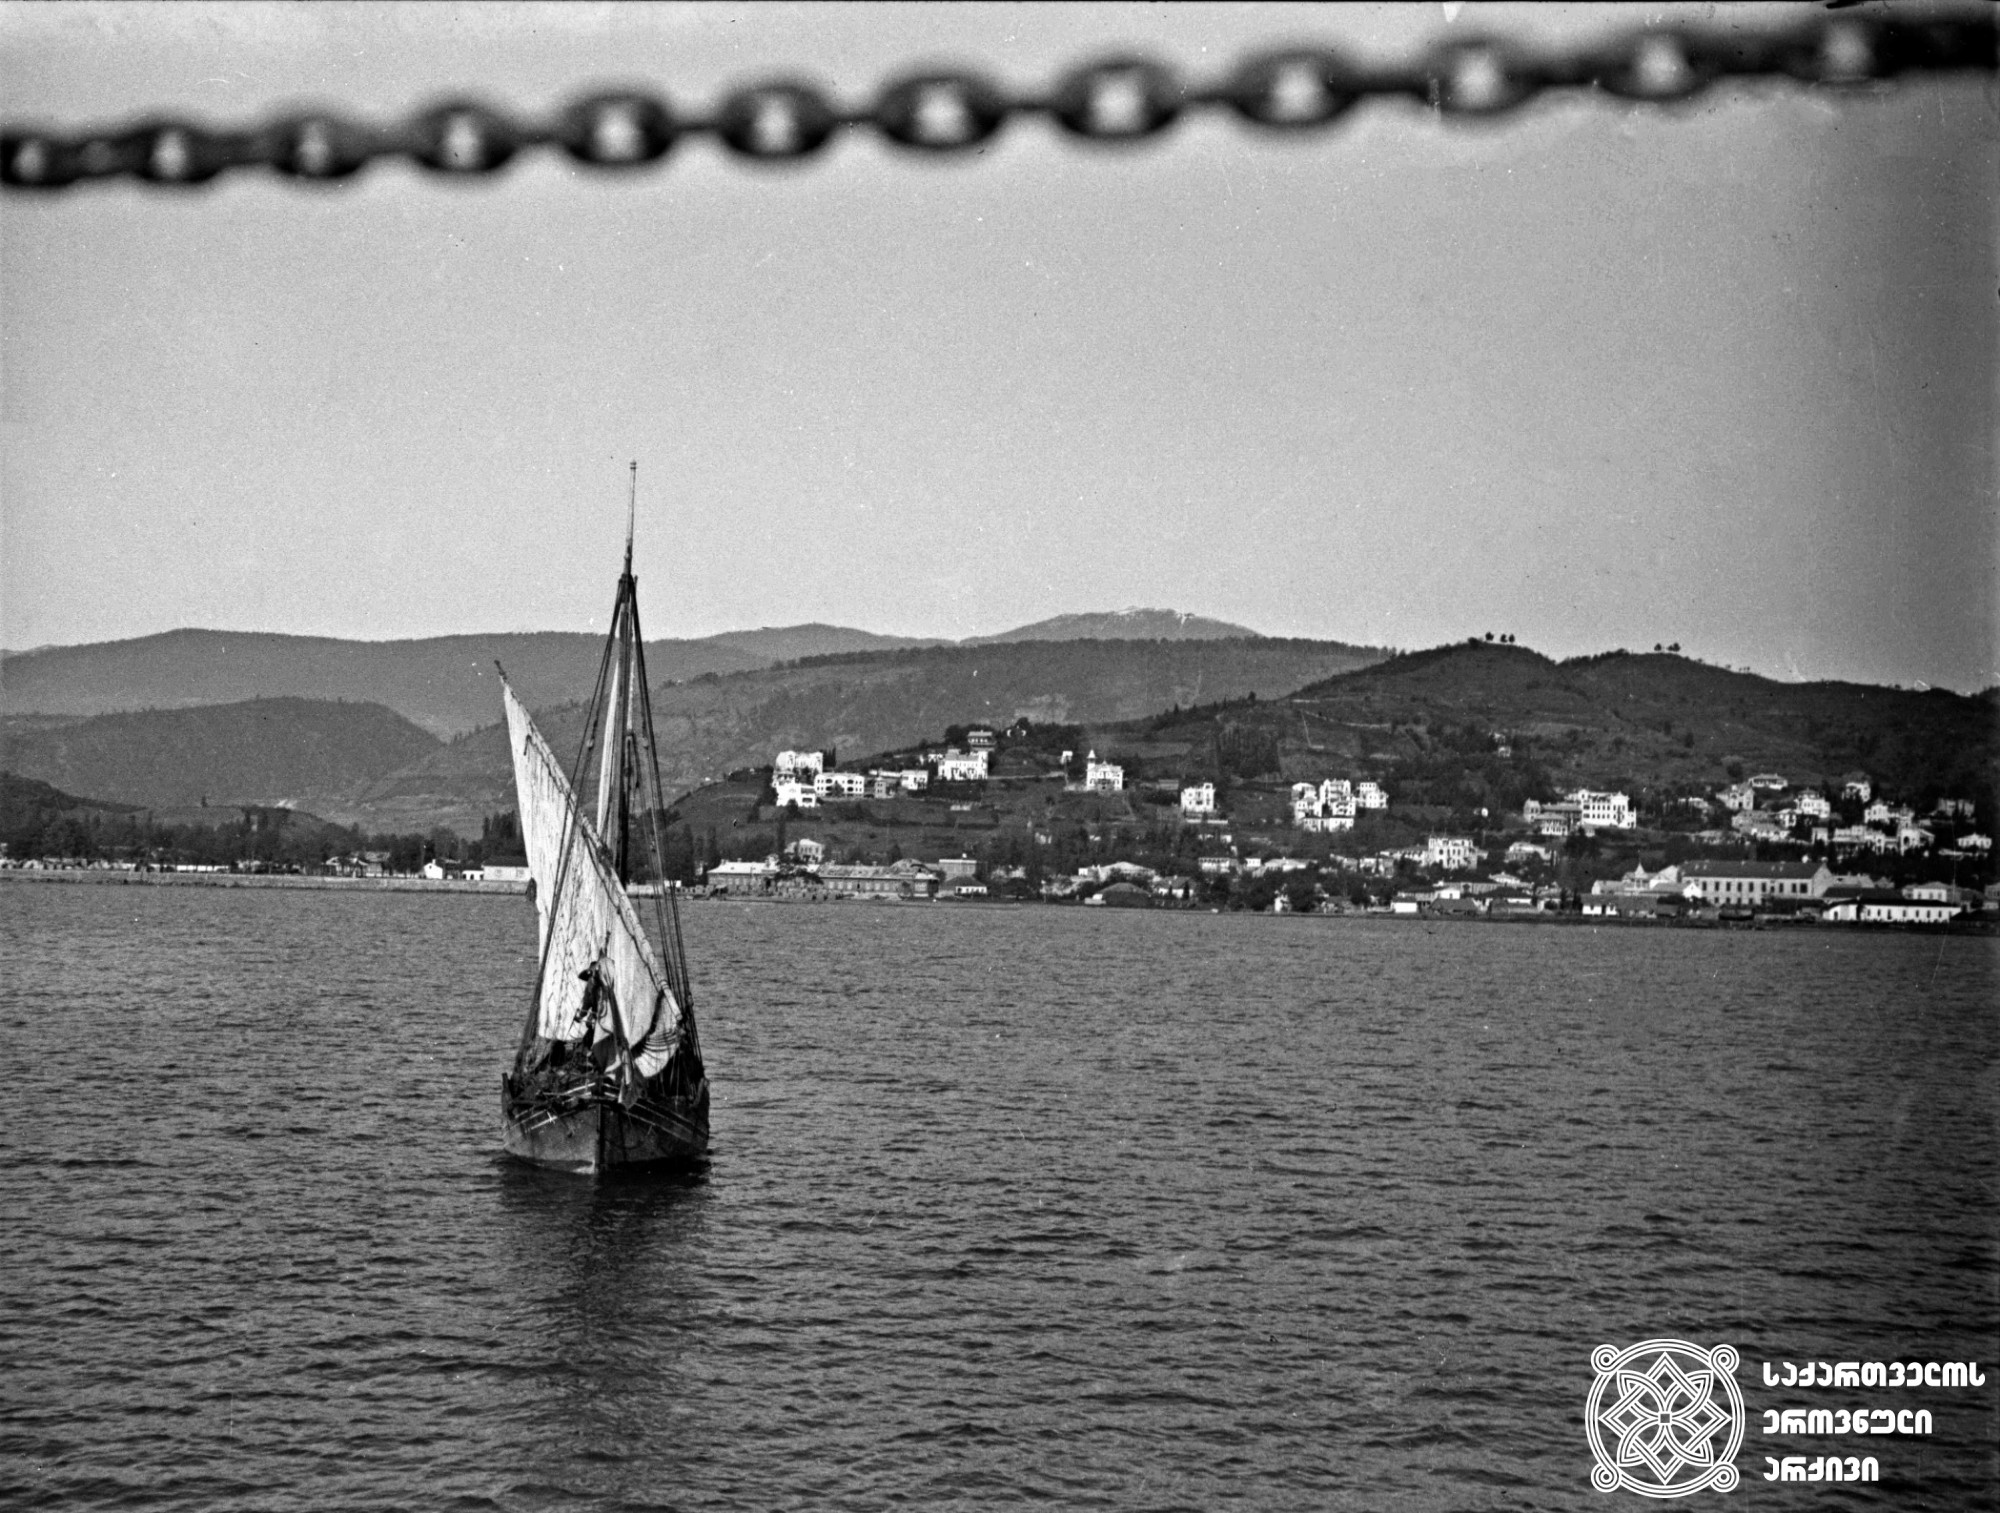 იალქნიანი ნავი ზღვაში <br>
[1910-1915] <br>
ვინოგრადოვ-ნიკიტინის კოლექცია<br>
Sailing boat in sea <br>
[1910-1915] <br>
From Vinogradov-nikitin’s collection